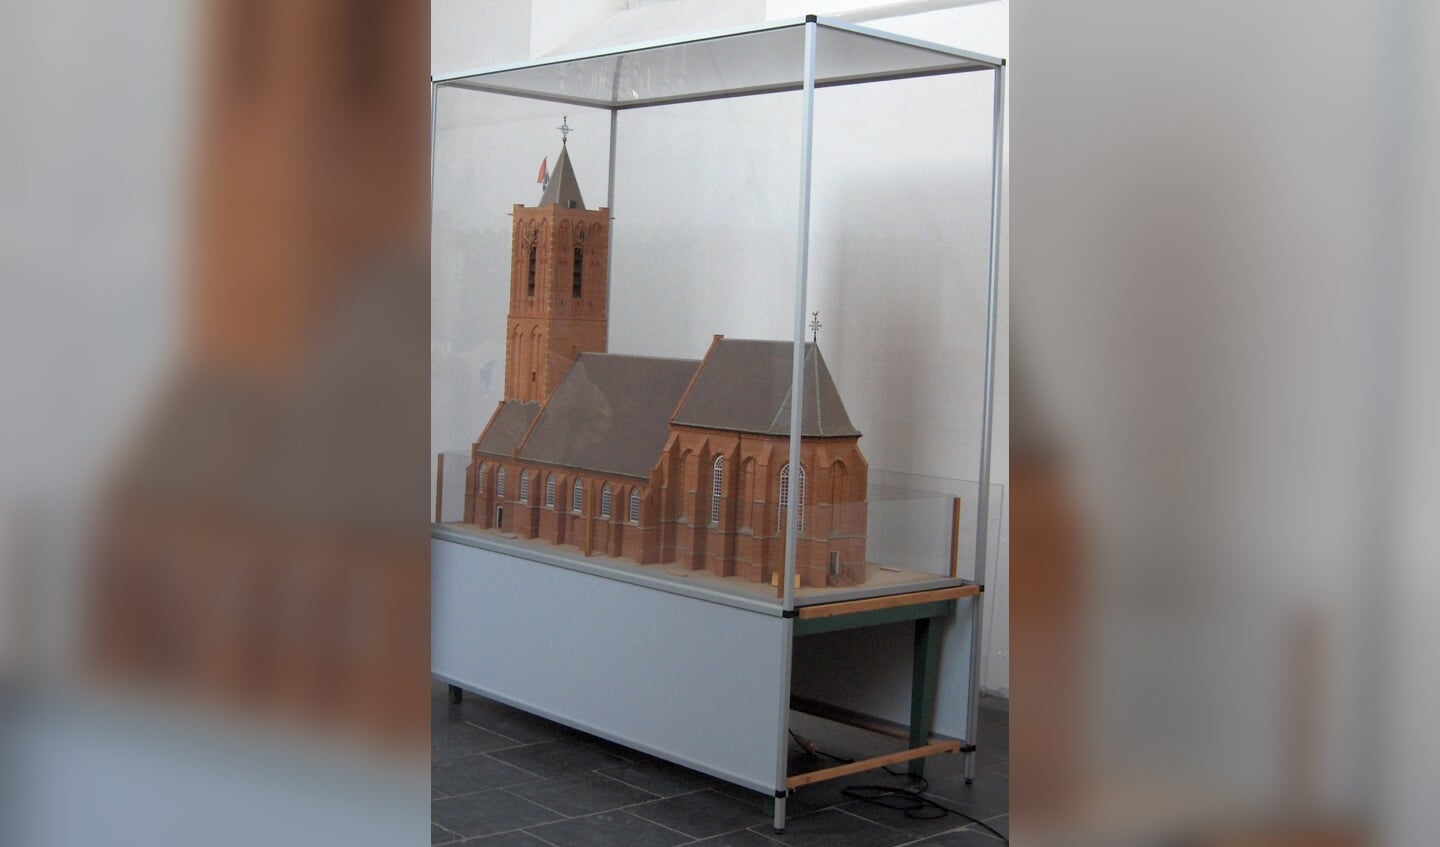 Wim van 't Land maakte als een prachtig voorbeeld van kunst een prachtige replica op schaal van de Hervormde kerk in Westbroek, welke in het koor van dit bedehuis staat opgesteld.[foto uit 2008 van Henk van de Bunt]